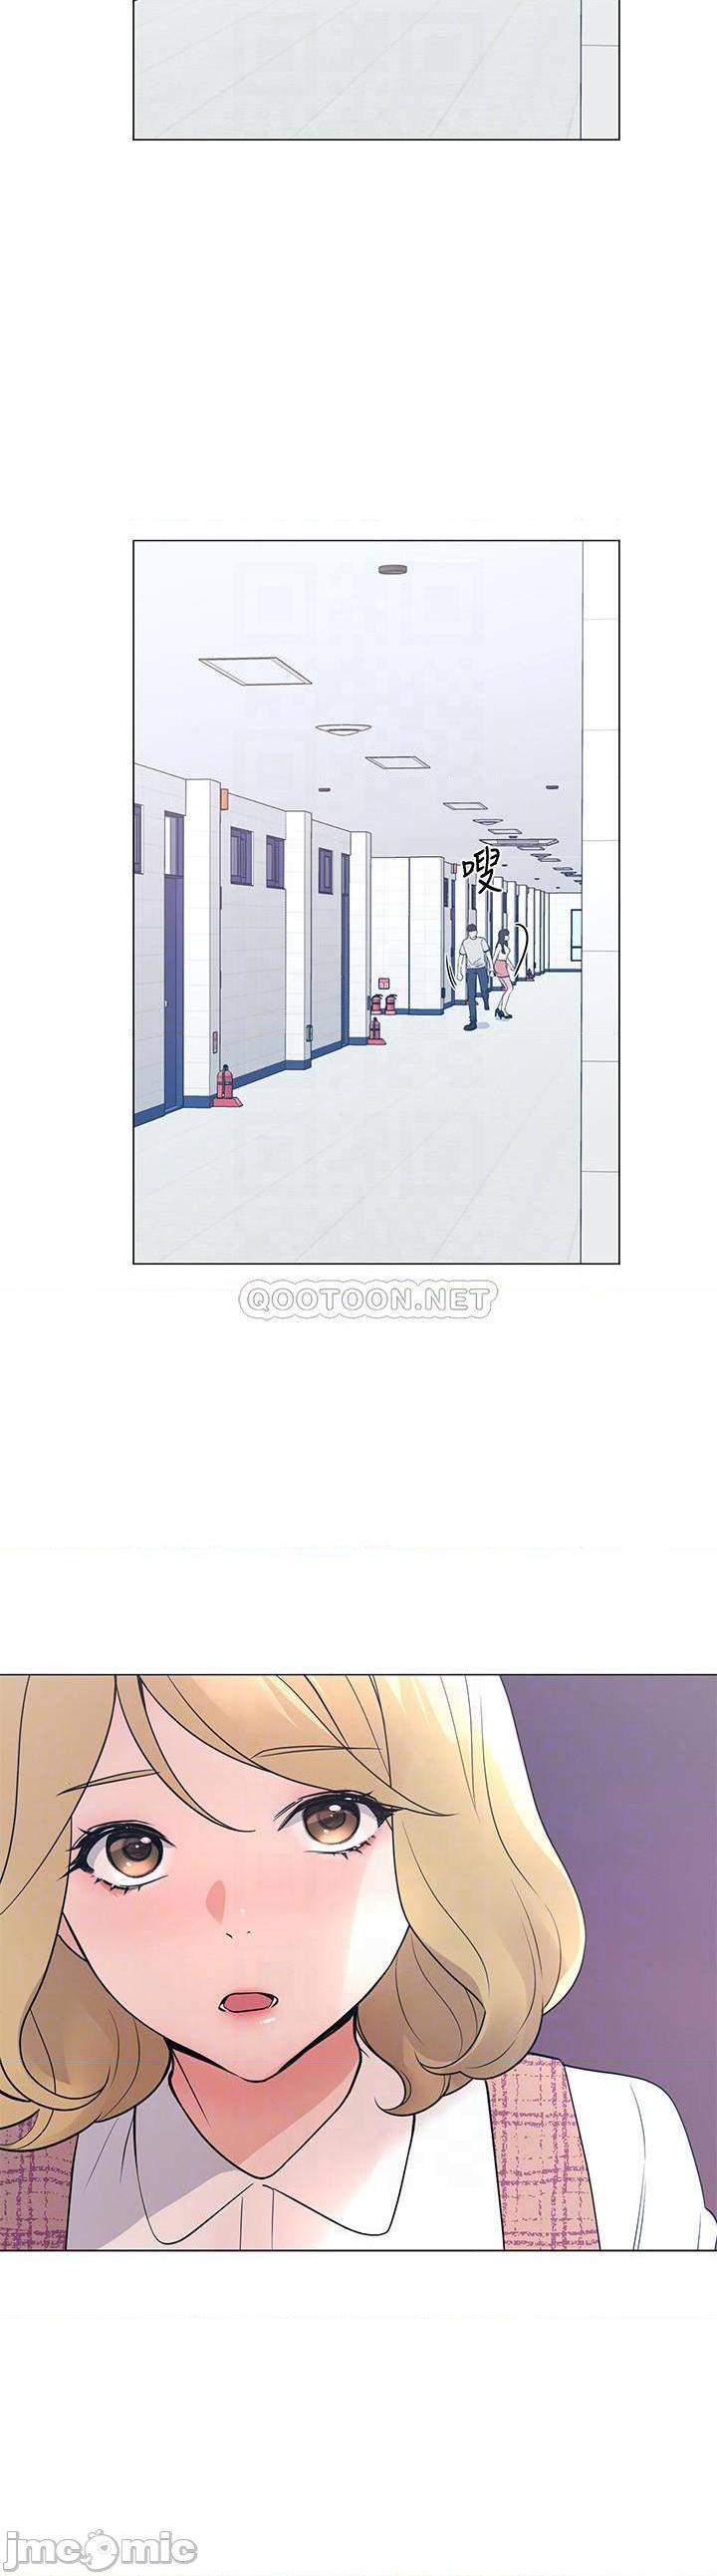 《重考生》漫画 第92话 - 在仓库内享受刺激的快感